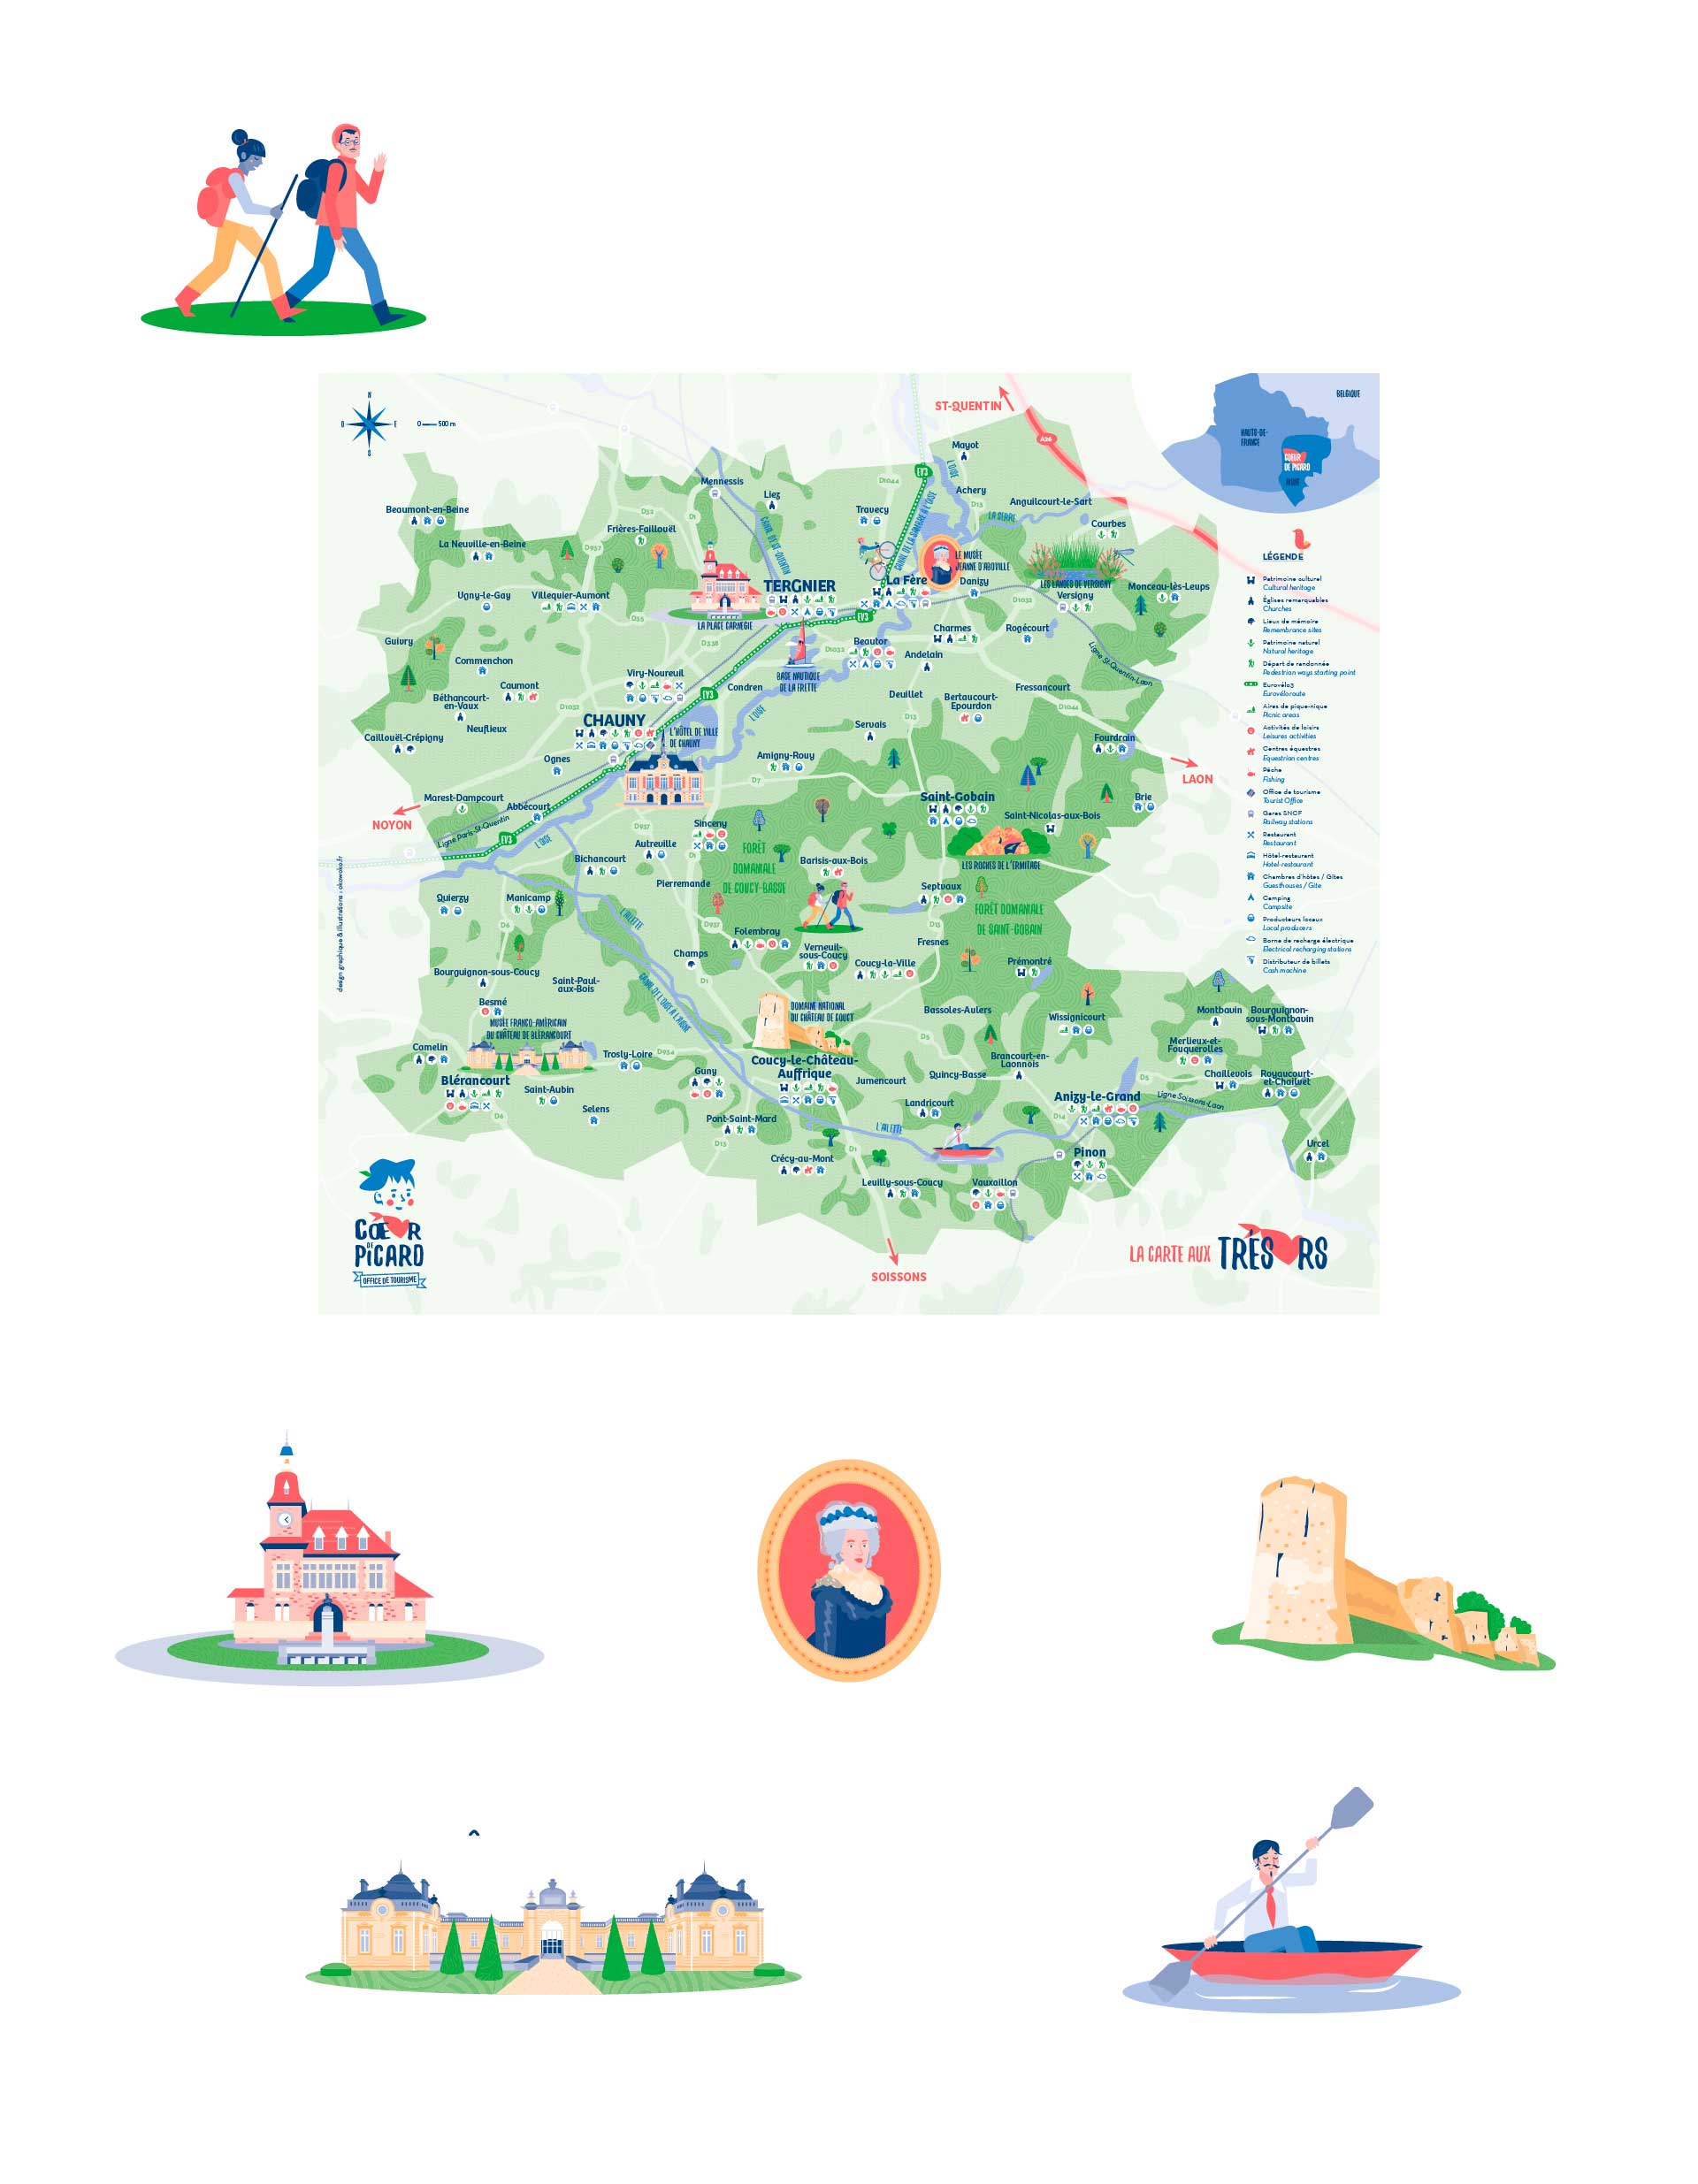 carte touristique illustrée de la destination Cœur de picard - Par le studio de design graphique okowoko à Amiens dans les Hauts de France